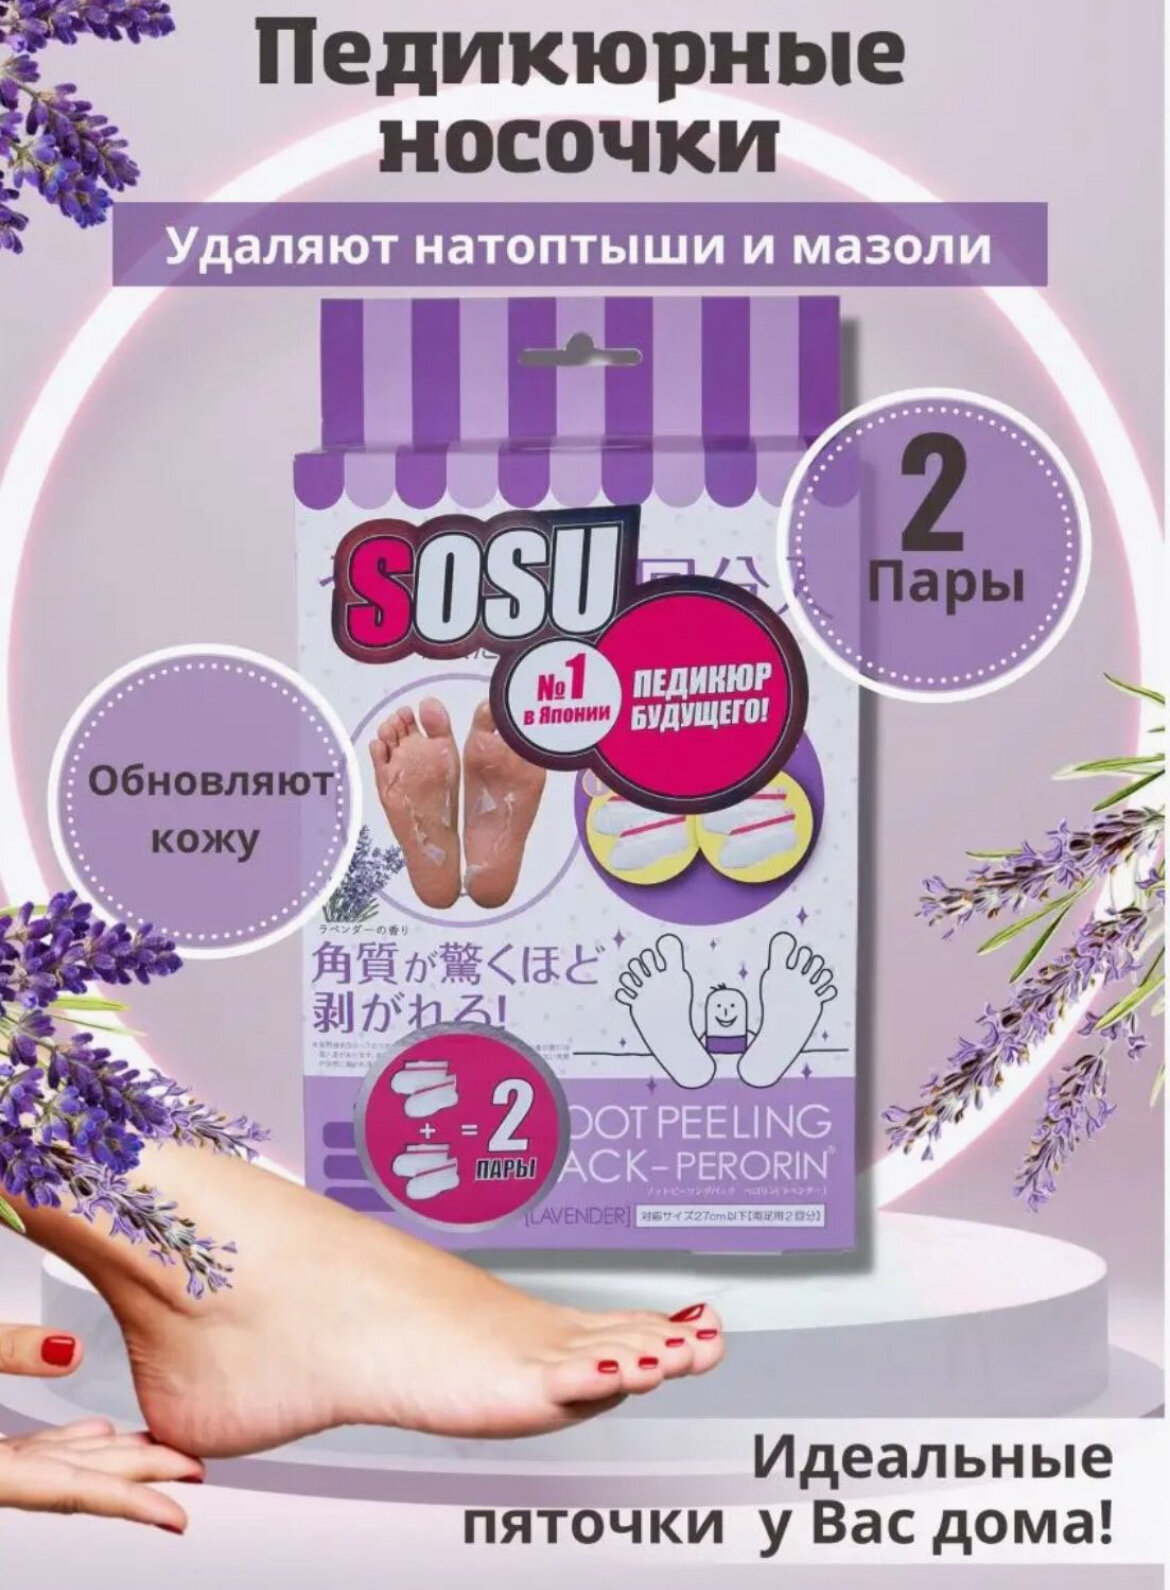 Японские носочки SOSU для педикюра с эффектом пиллинга. С ароматом лаванды. 2 пары в упаковке.